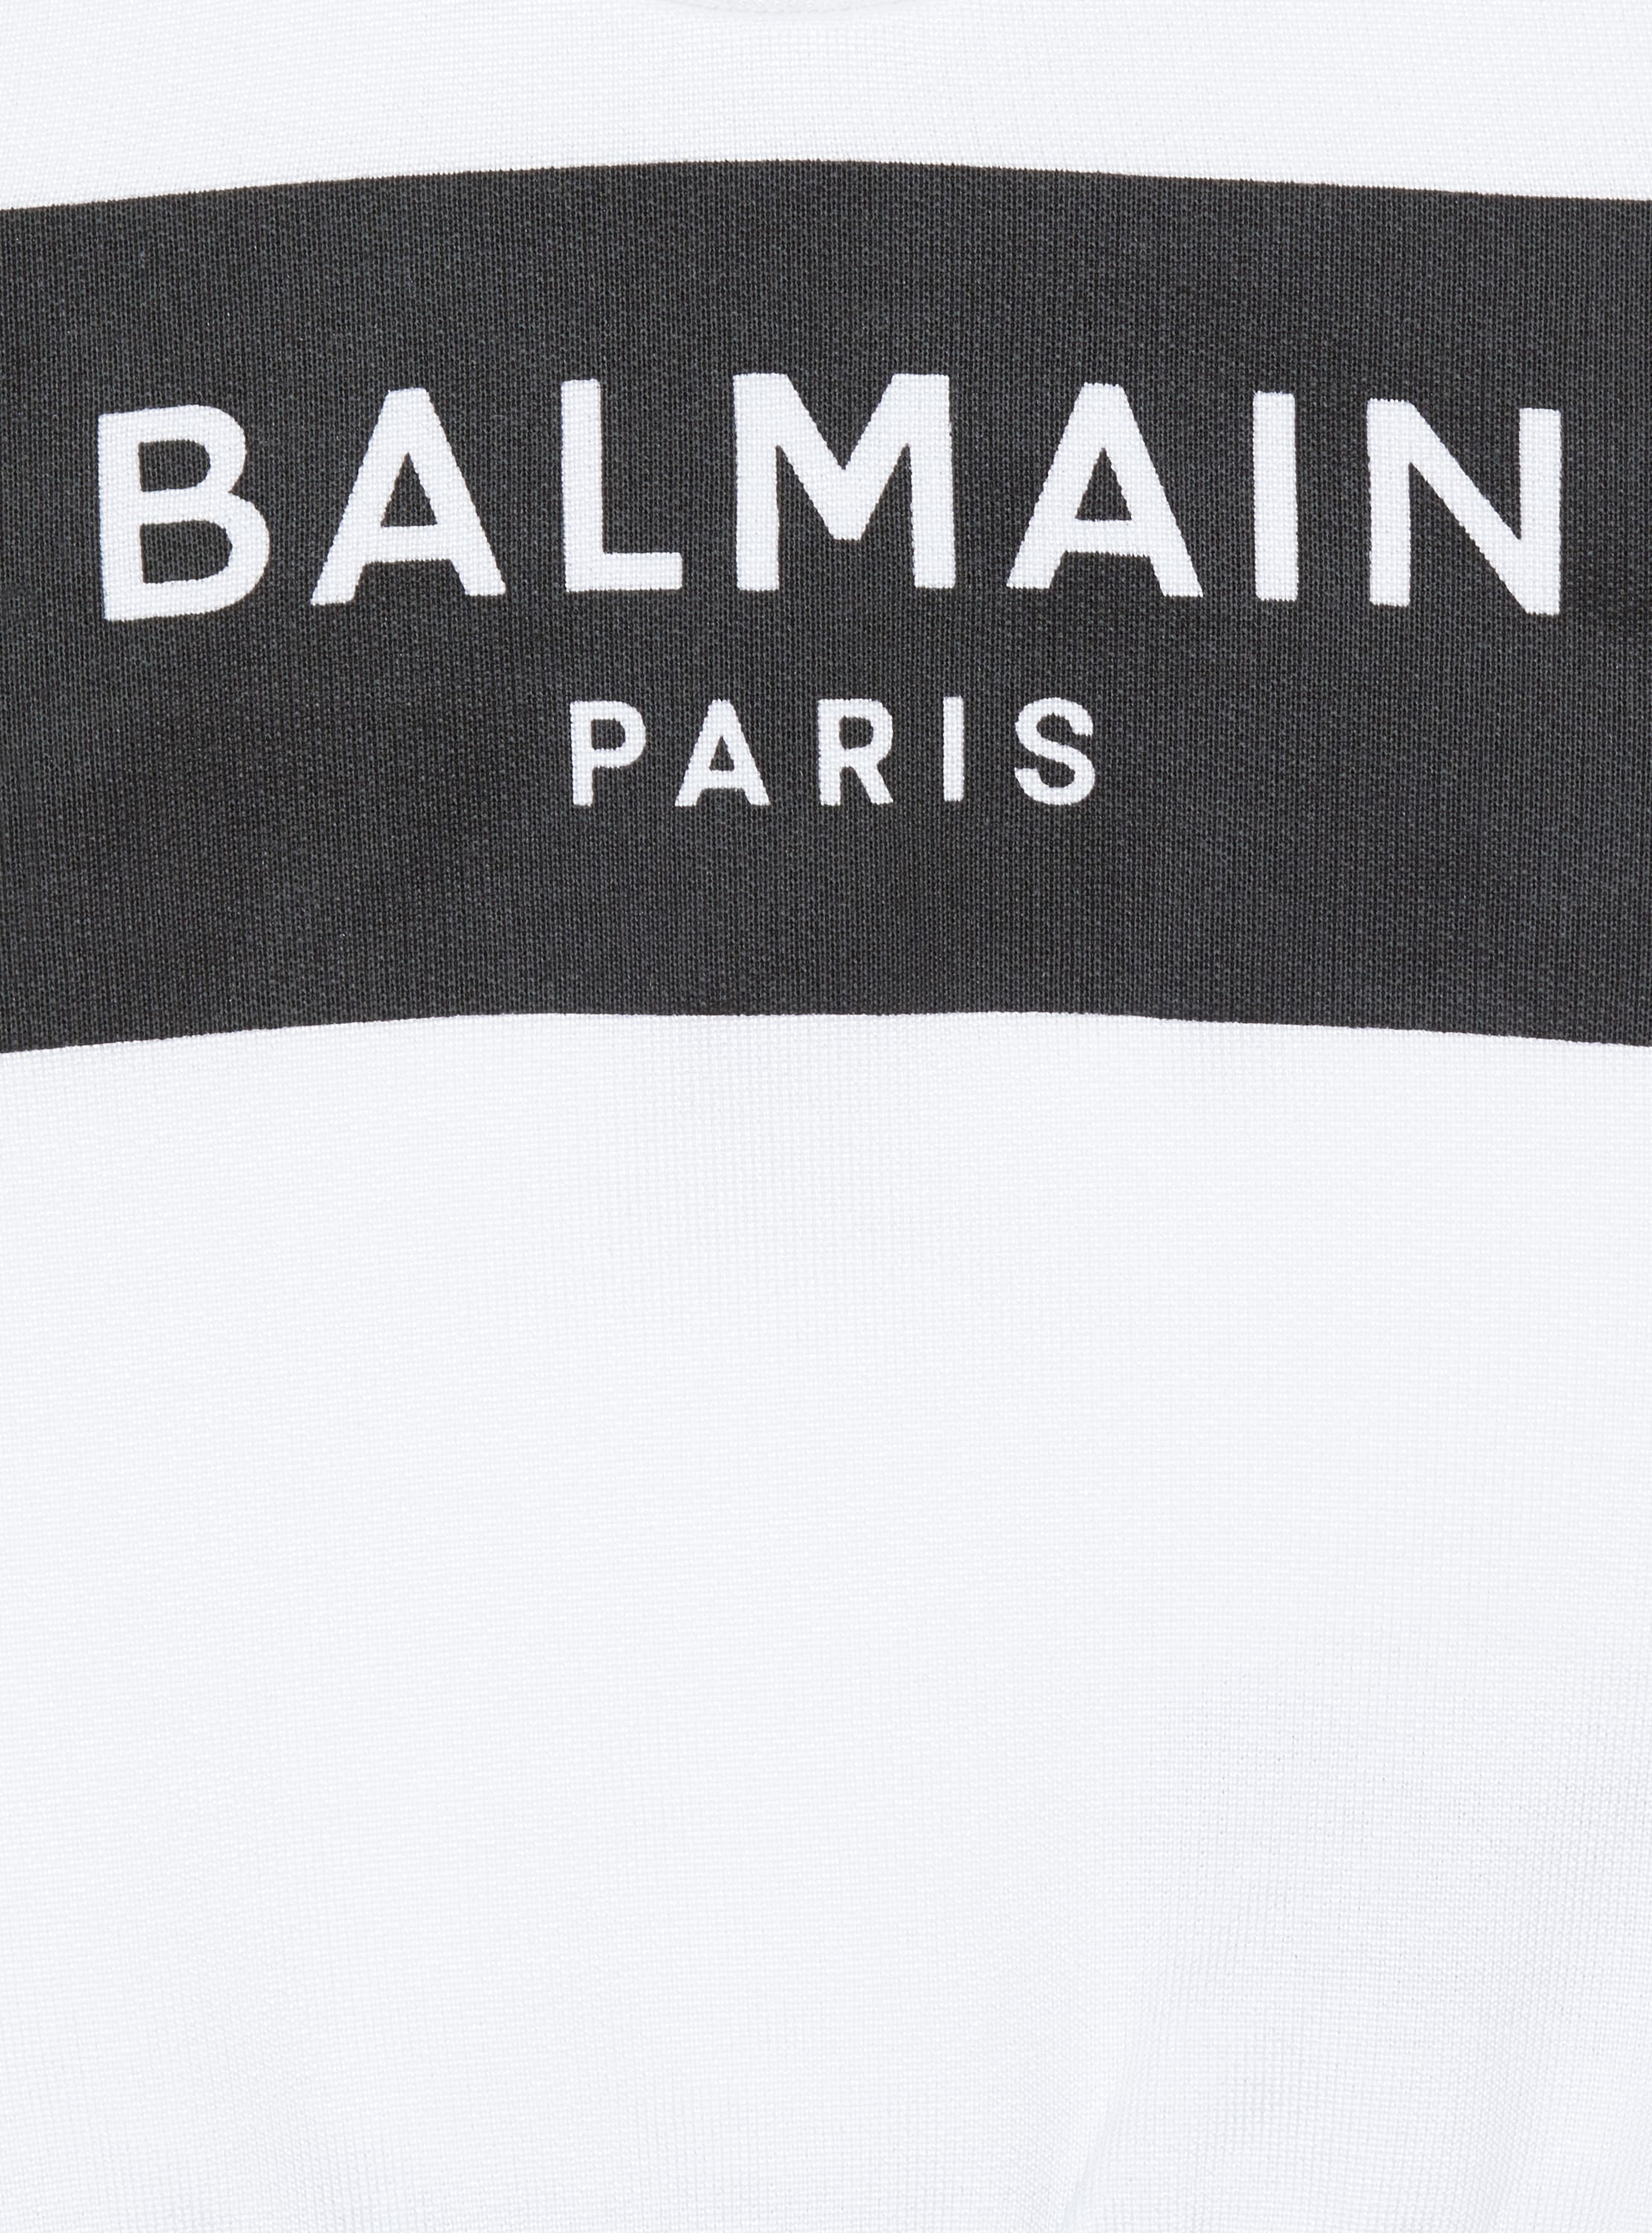 Balmain Paris sweater